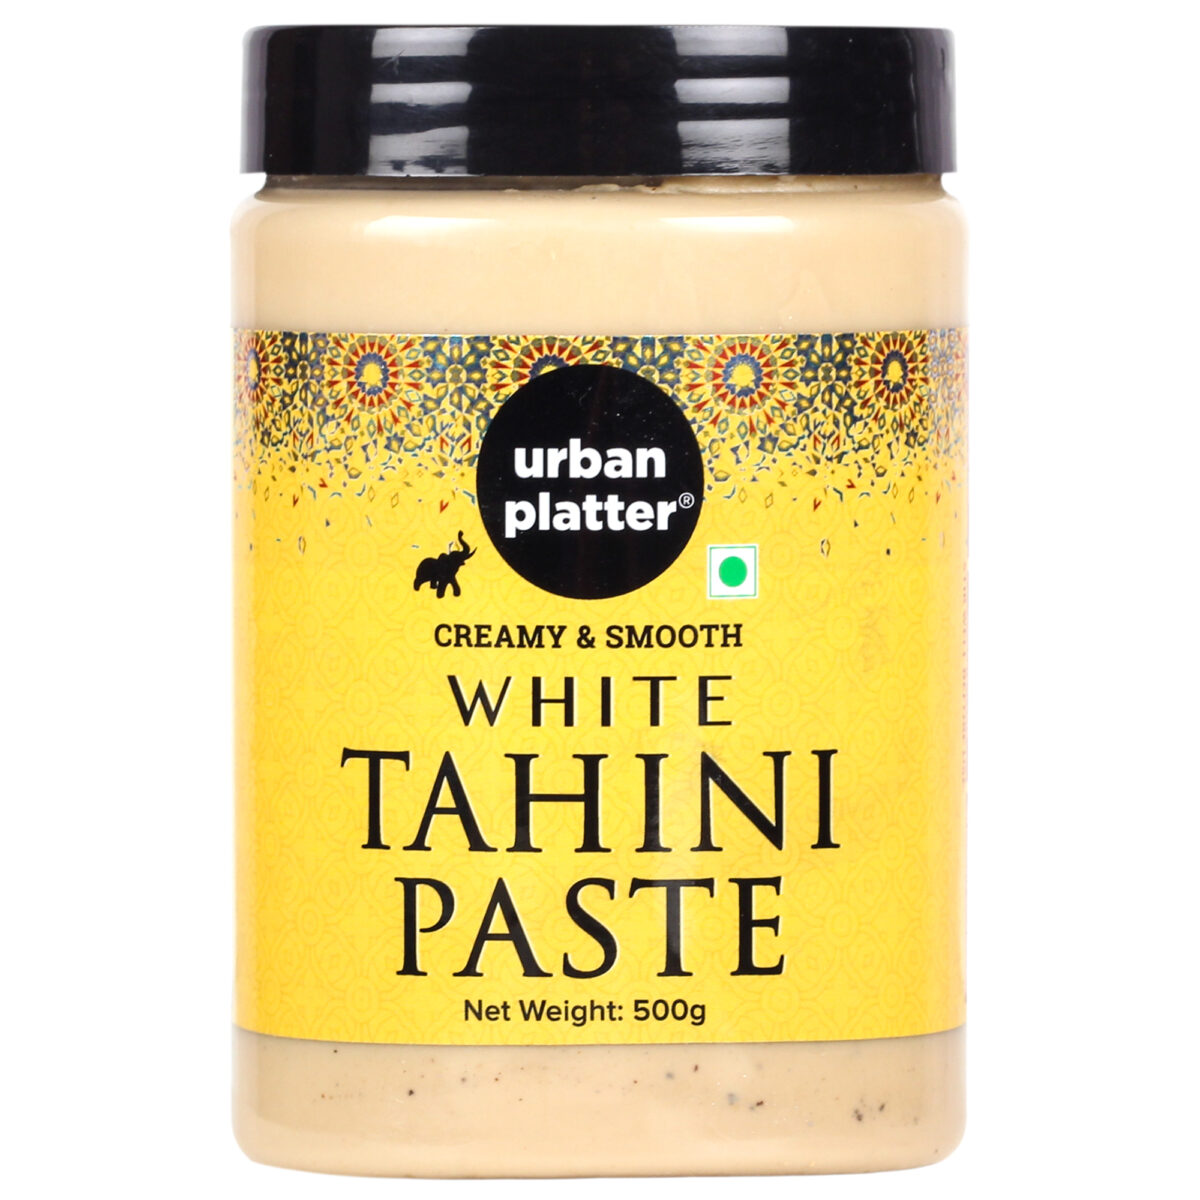 Buy Urban Platter White Tahini Paste 500g Online at Best Price - Urban ...